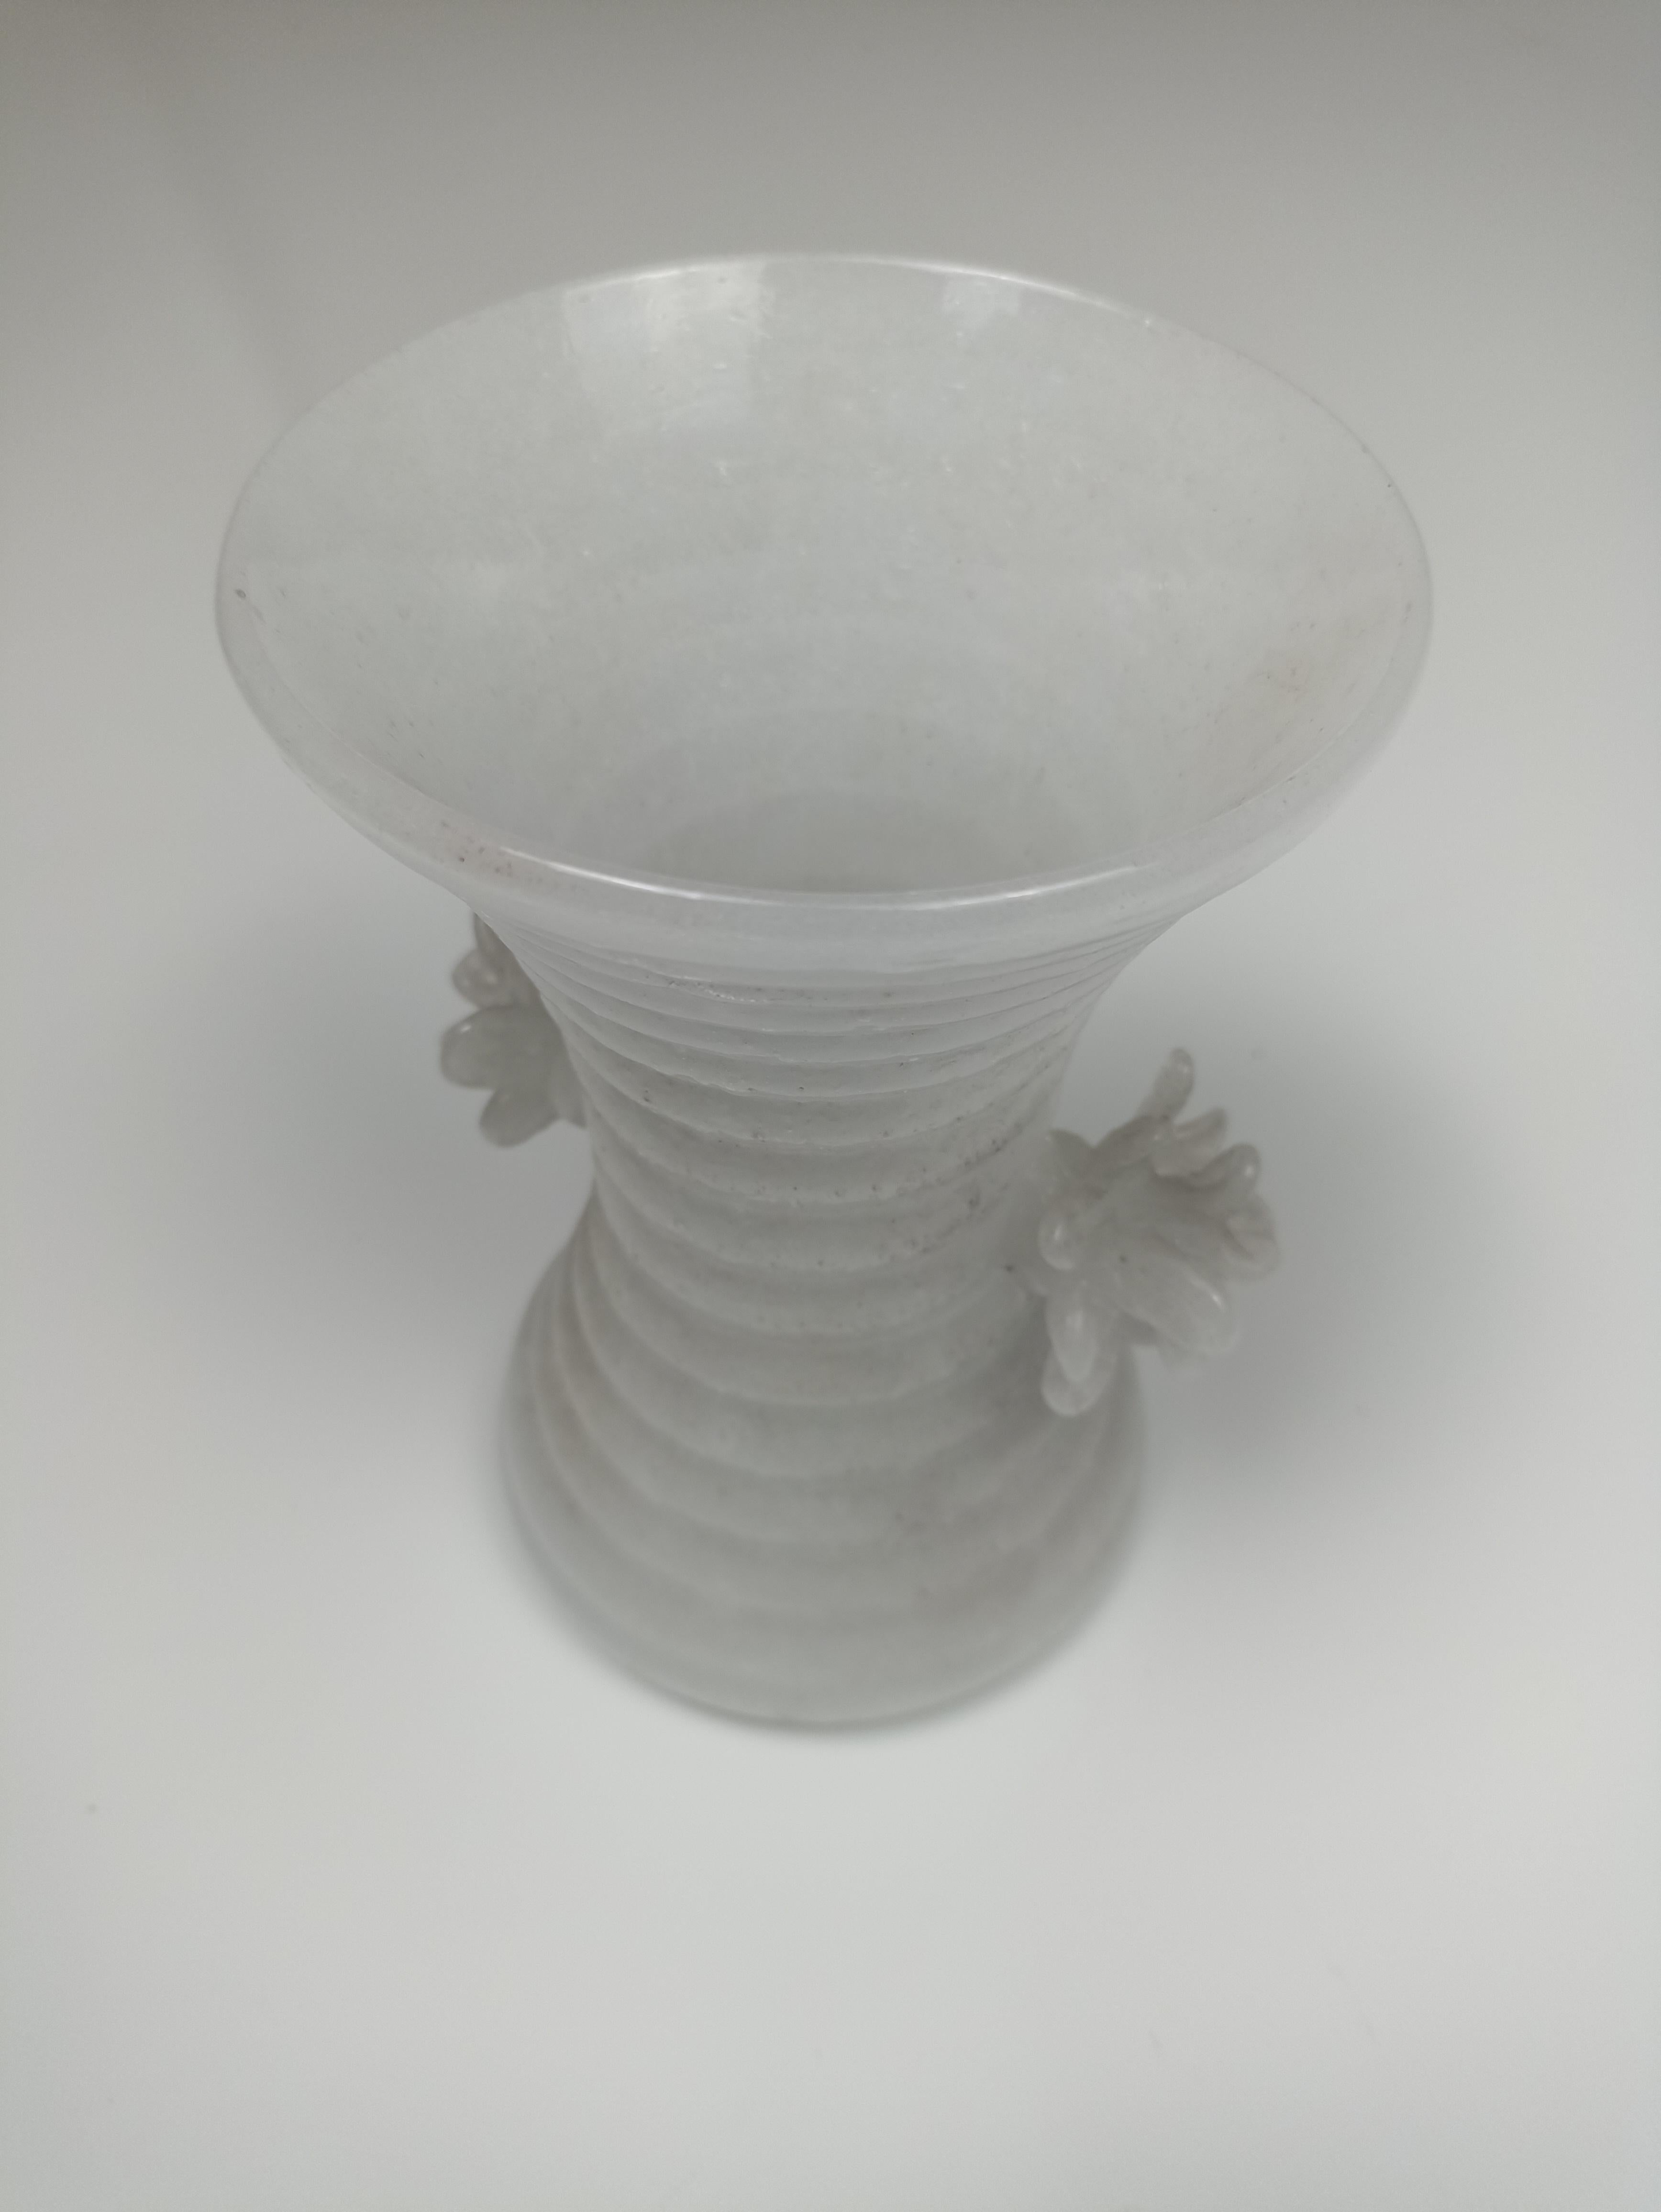 Découvrez la beauté du verre de Murano avec les vases Pulegoso. Cette ligne unique de vases a été créée dans les années 40 en utilisant du verre blanc opaque lourd et des moules pour créer une forme caractéristique en forme de vague remplie de